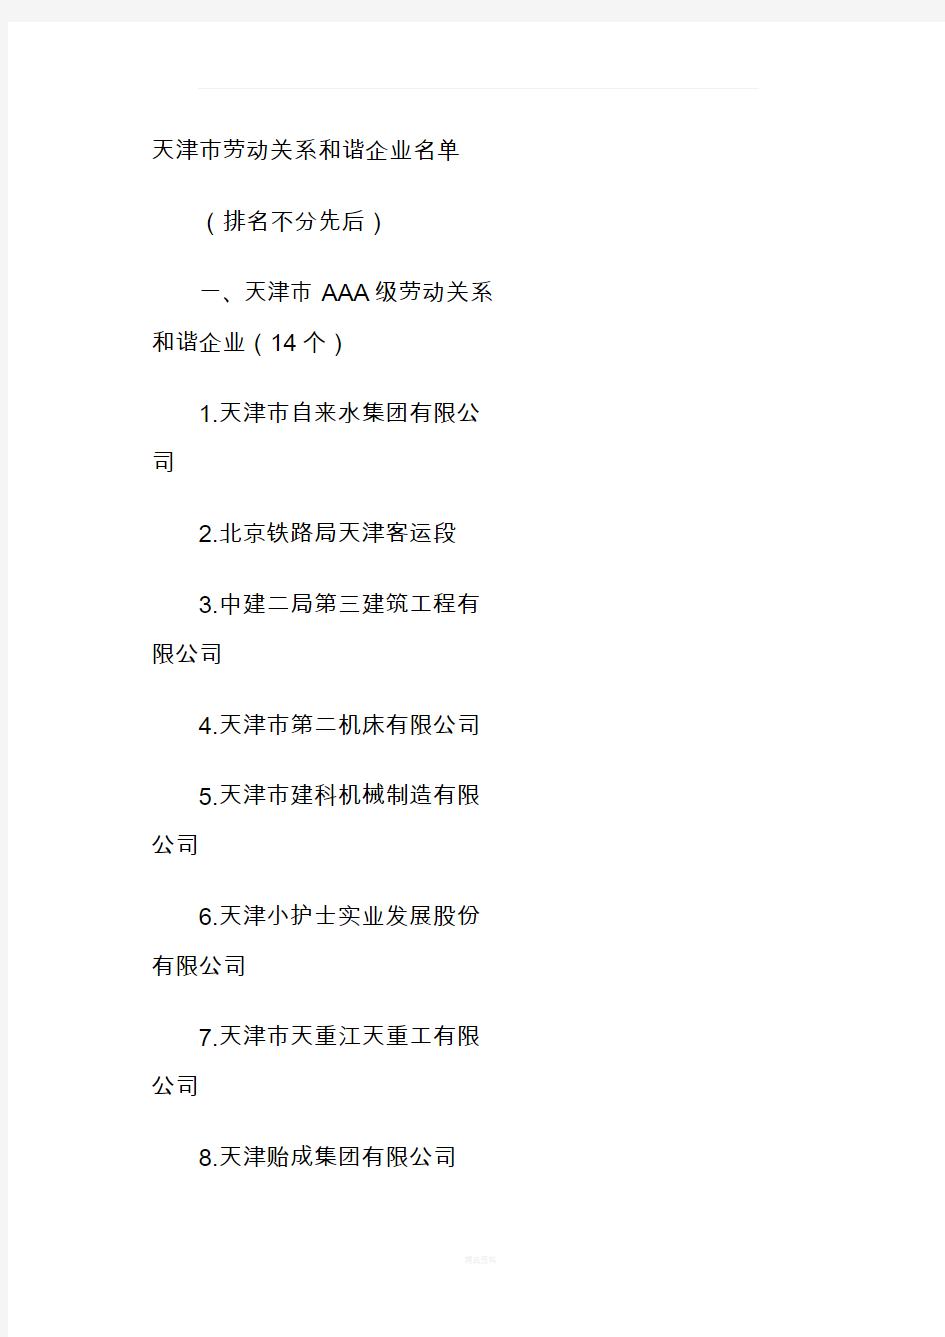 天津市知名企业名单